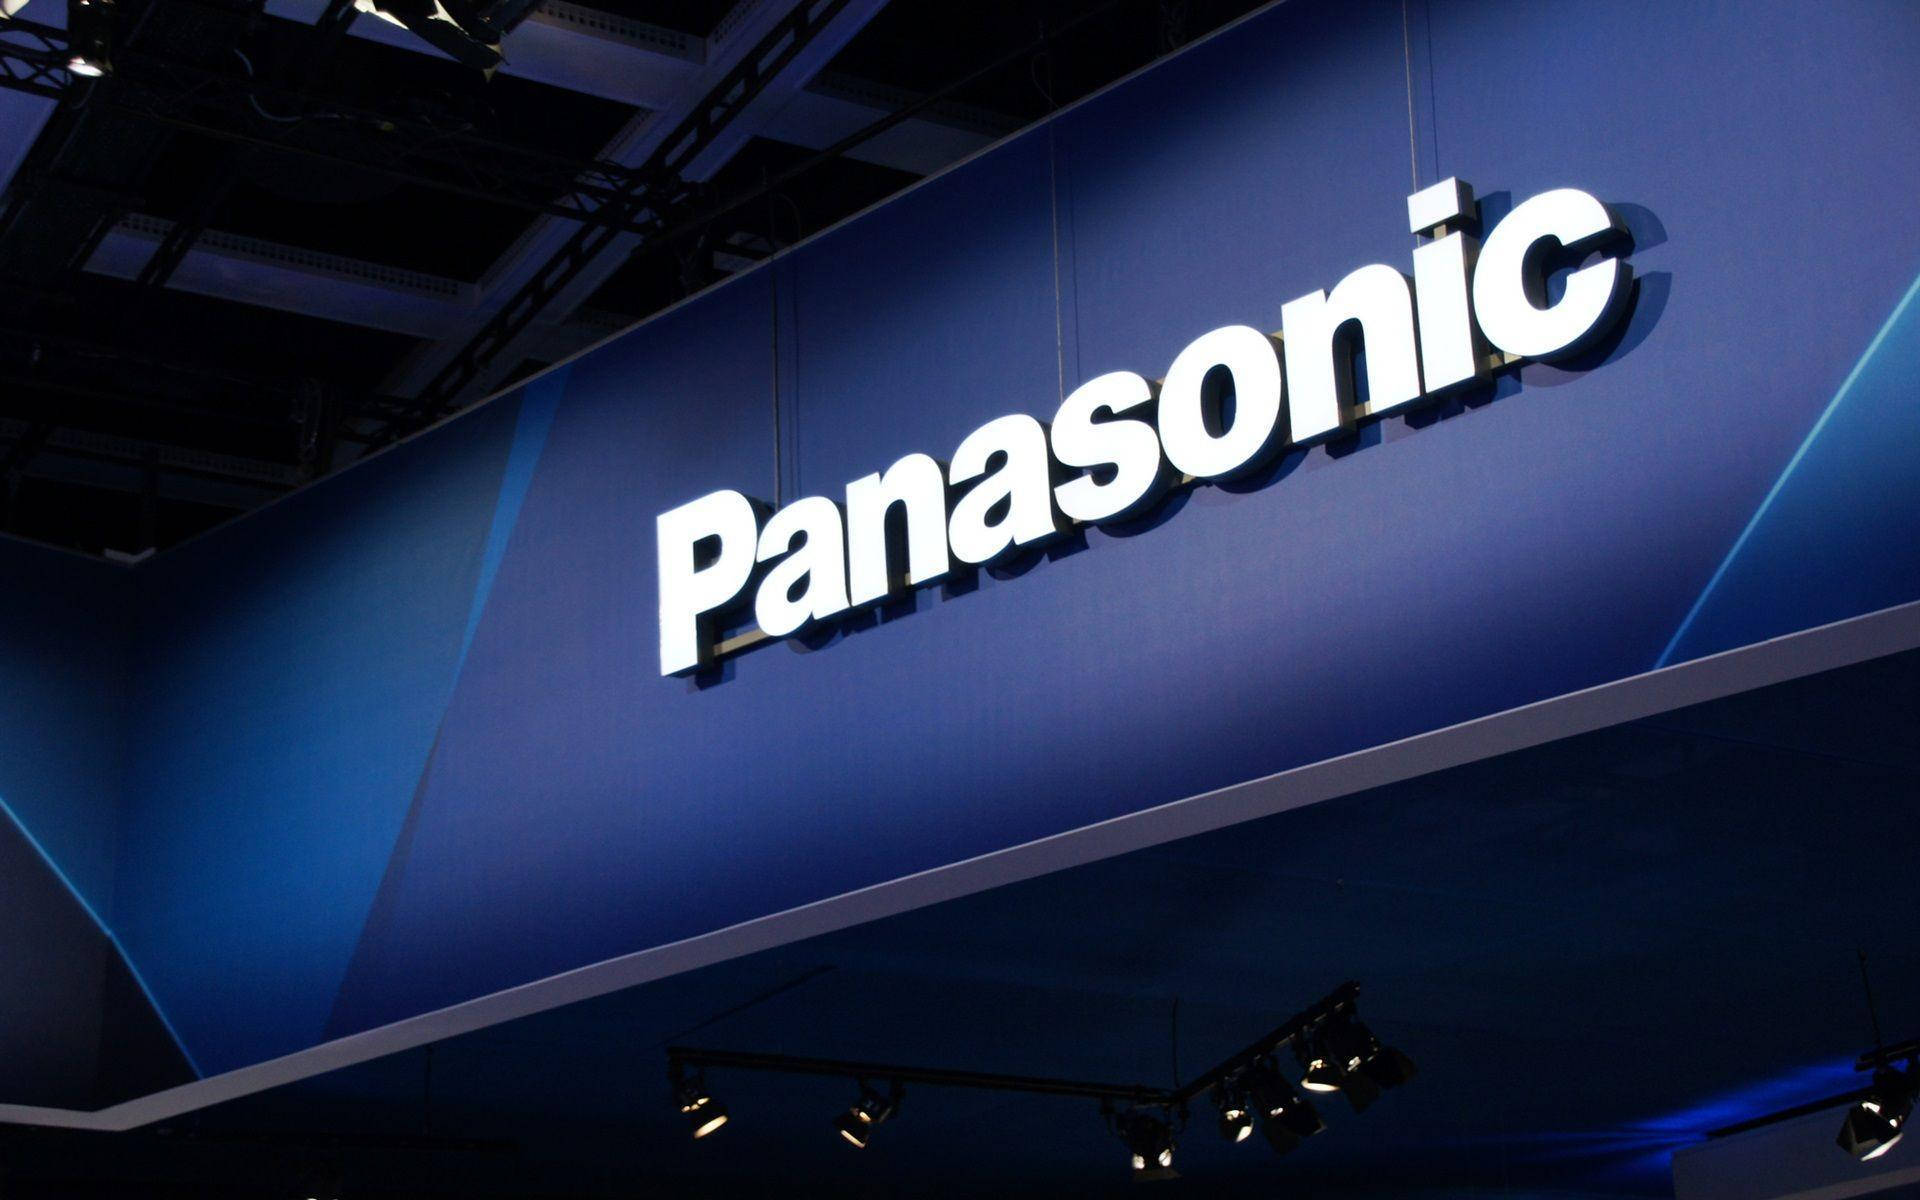 Panasonic Facade In Blue